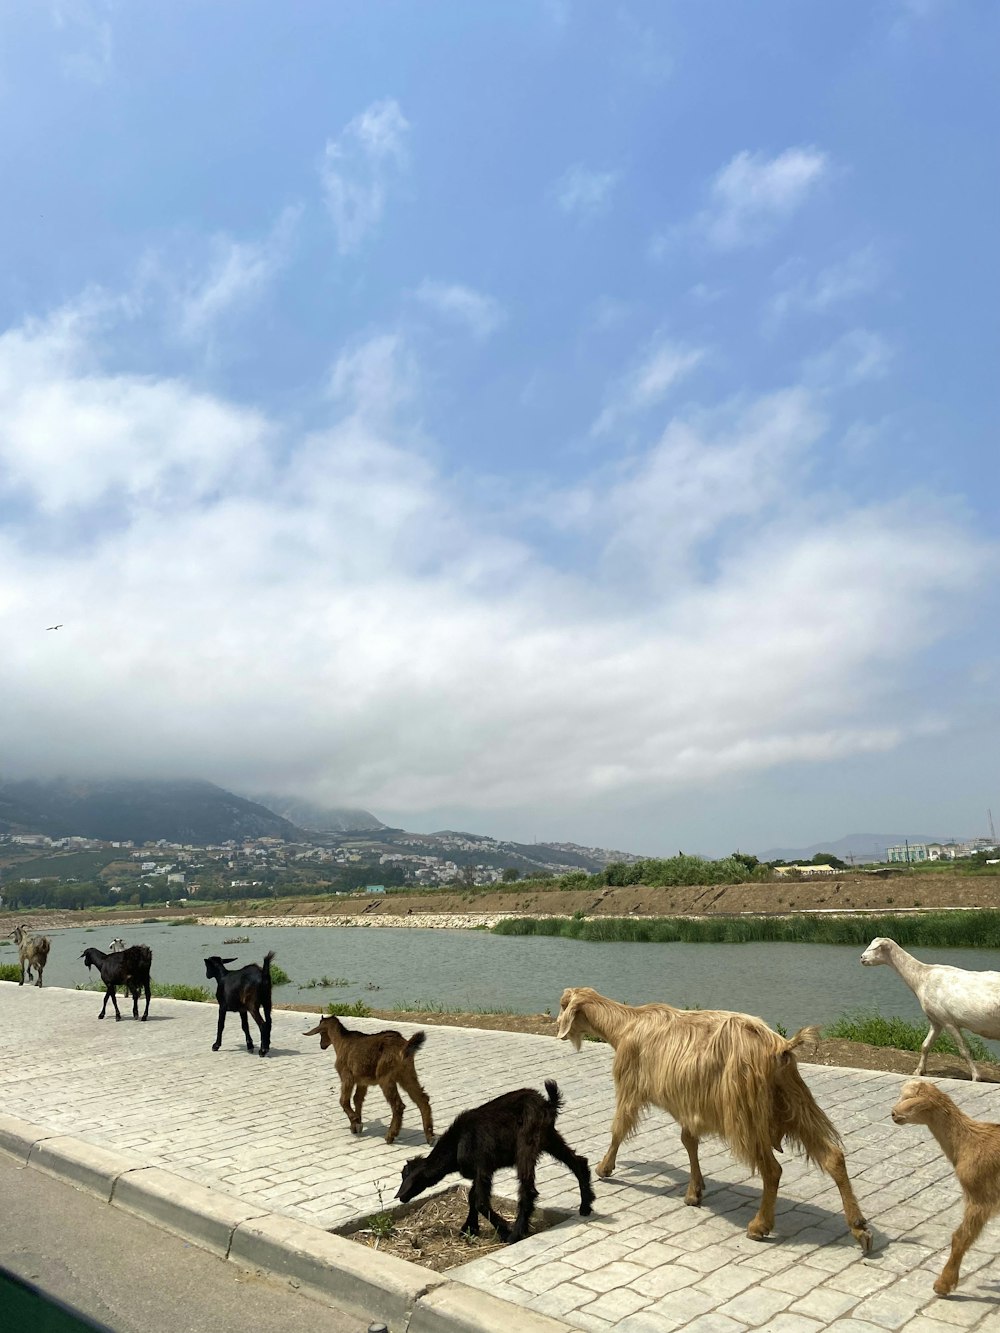 a herd of goats walking across a stone walkway